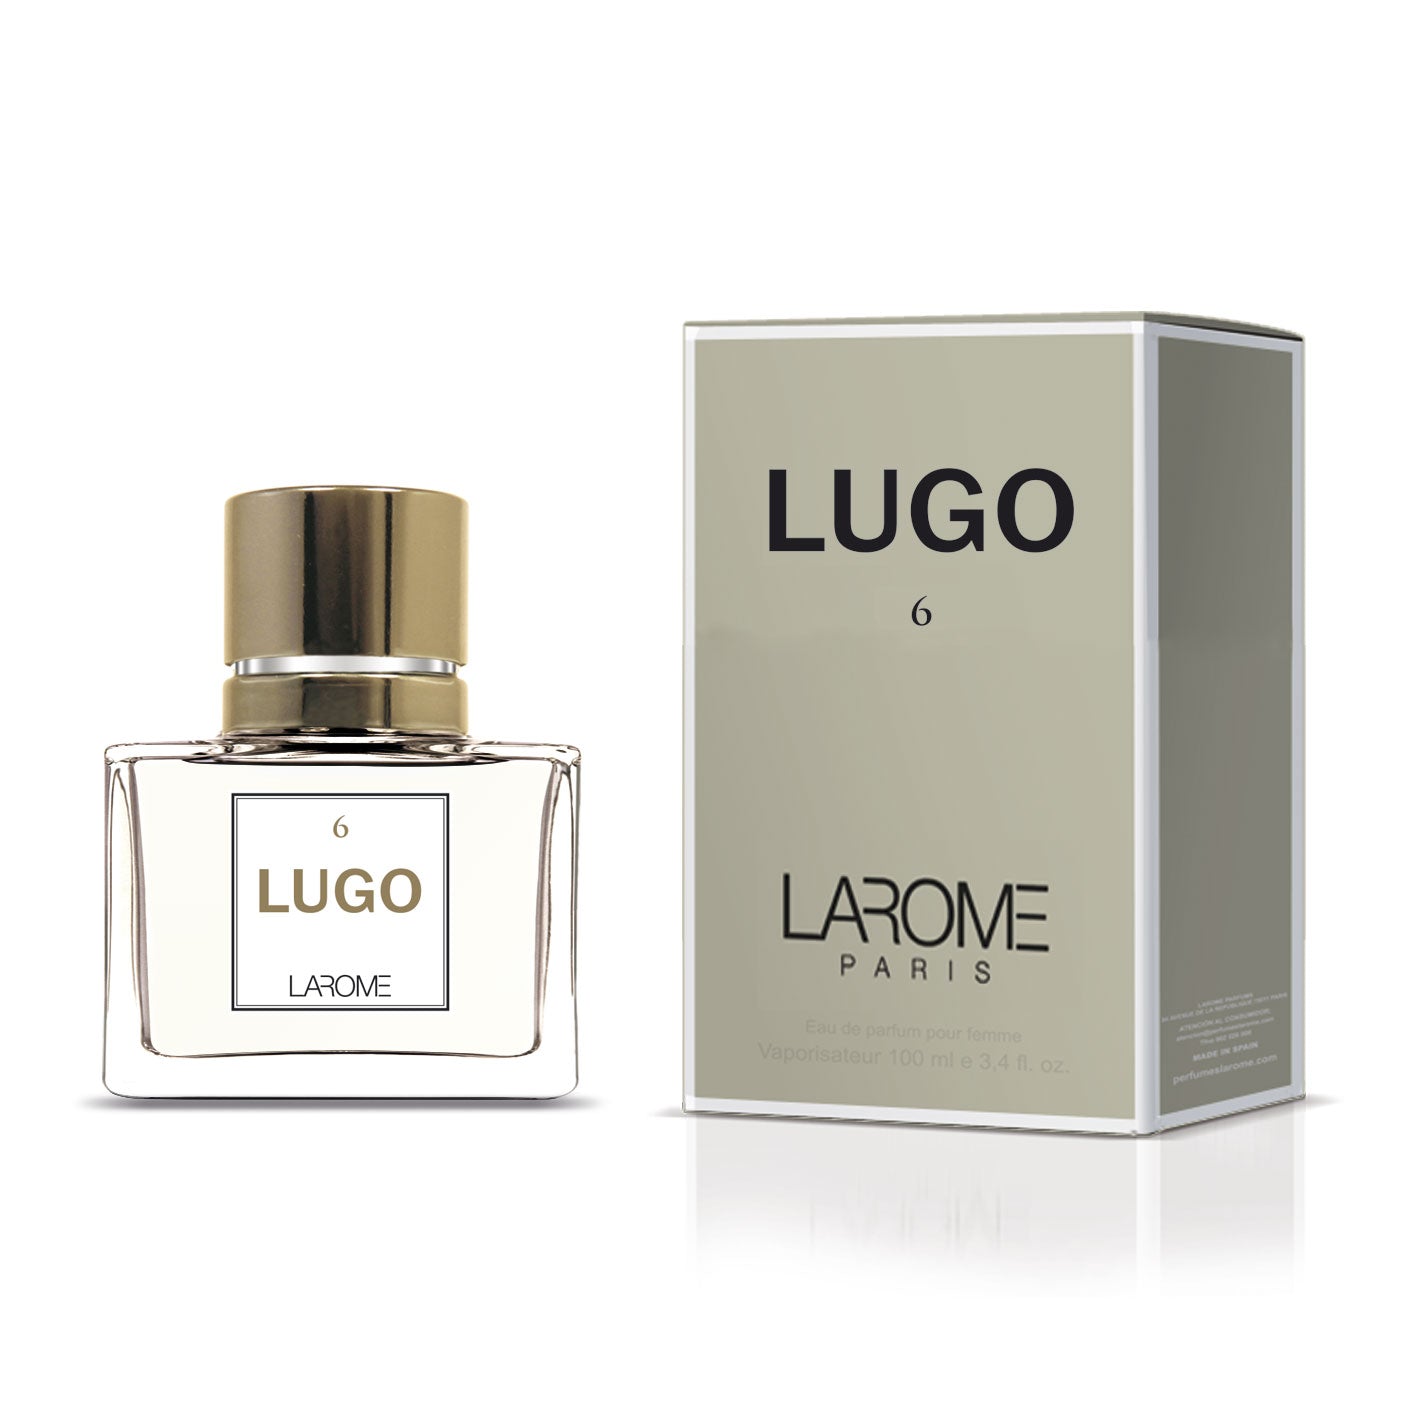 LUGO 6F by Larome geïnspireerd door Hugo Woman